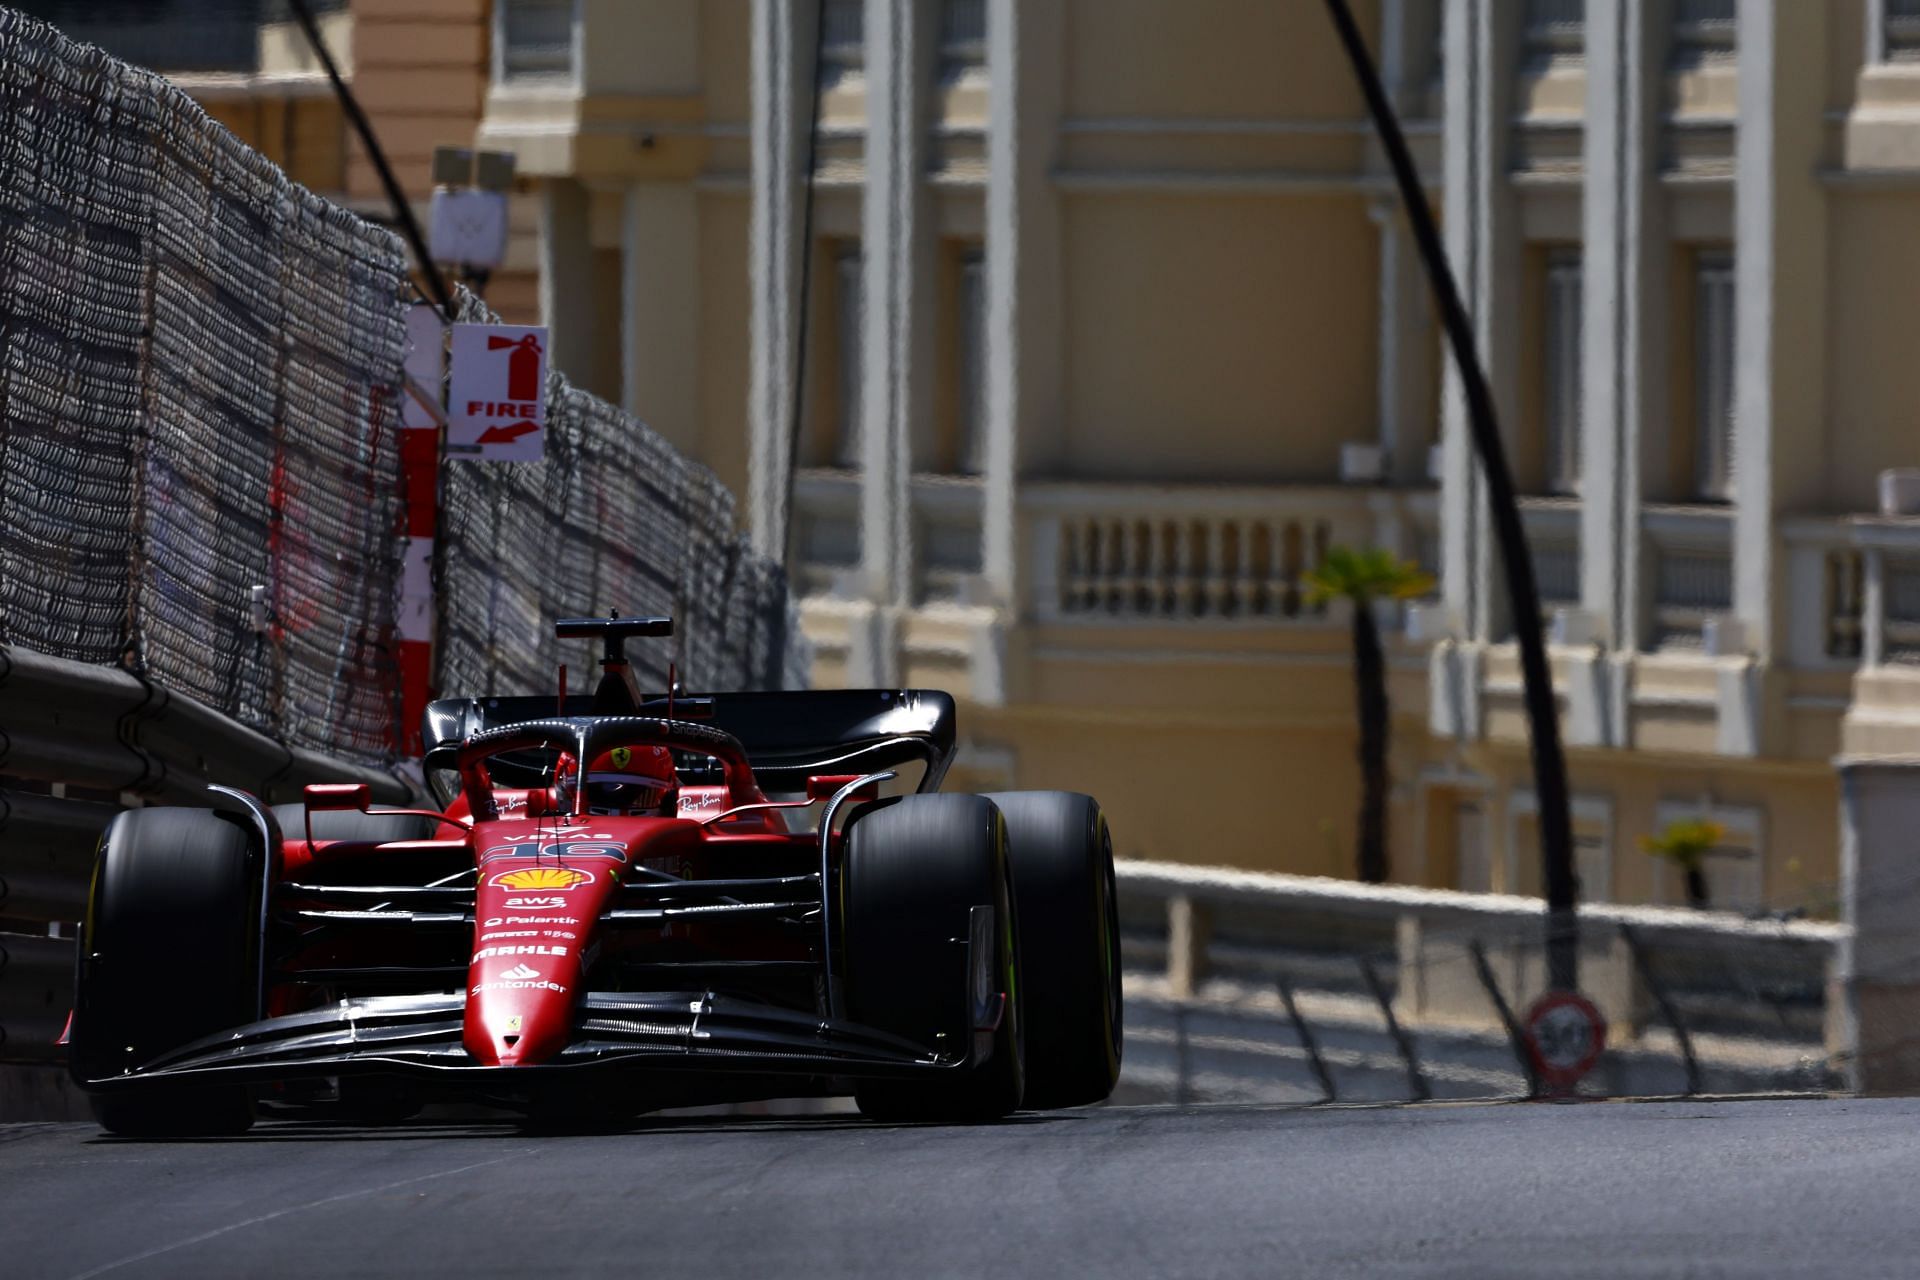 Charles Leclerc topped FP1 for Ferrari